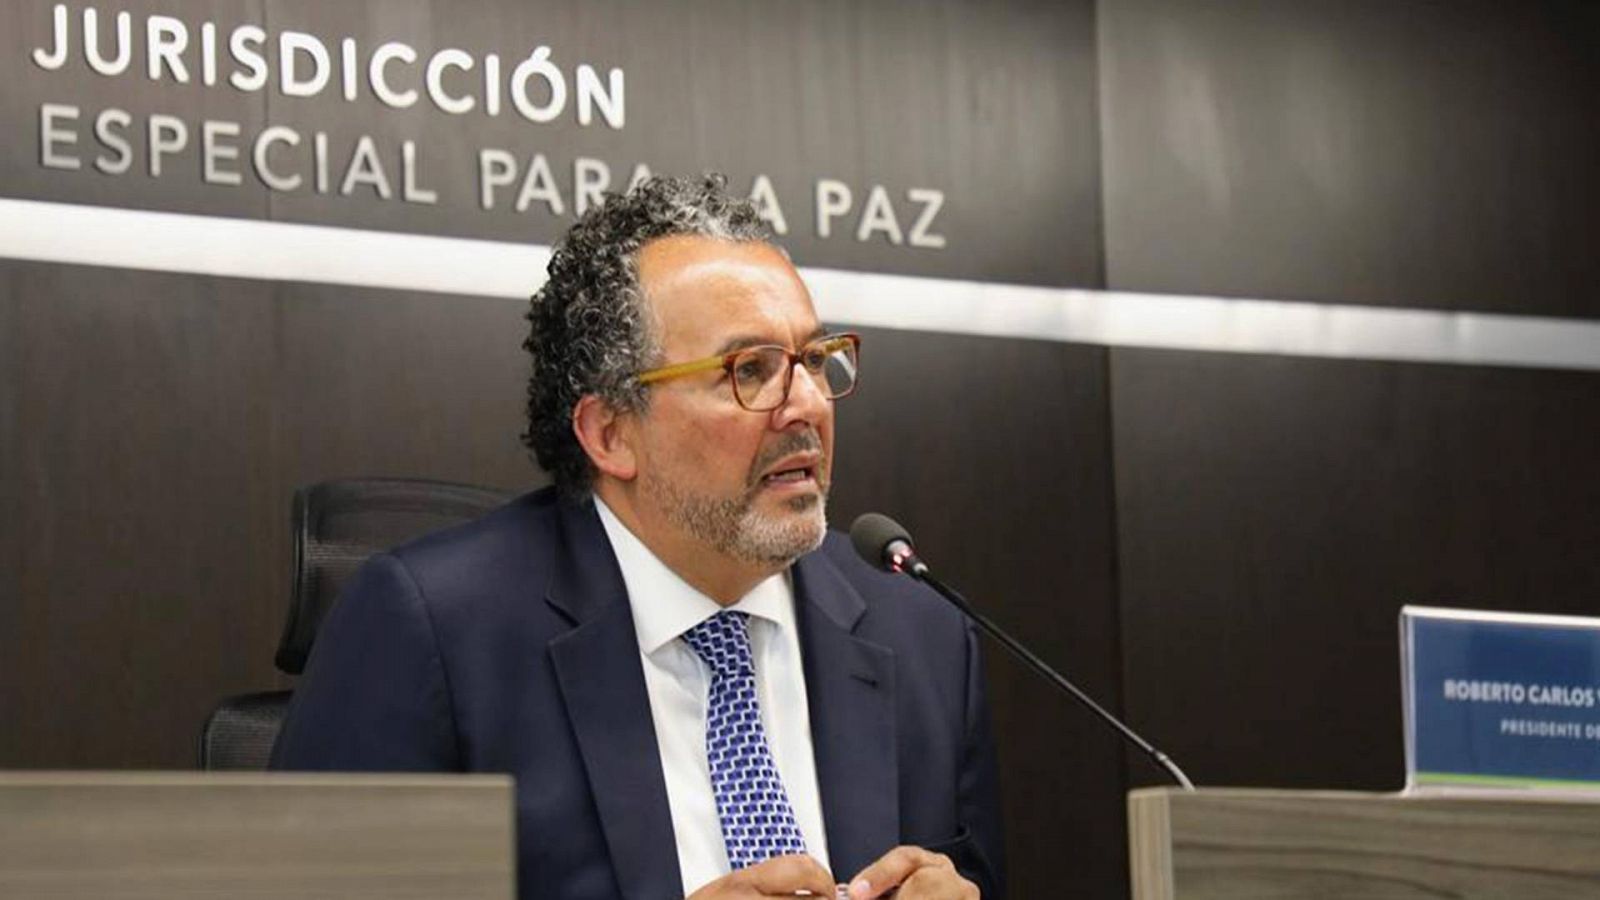 El presidende de la Jurisdicción Especial para la Paz, Roberto Carlos Vidal, durante una rueda de prensa en Bogotá